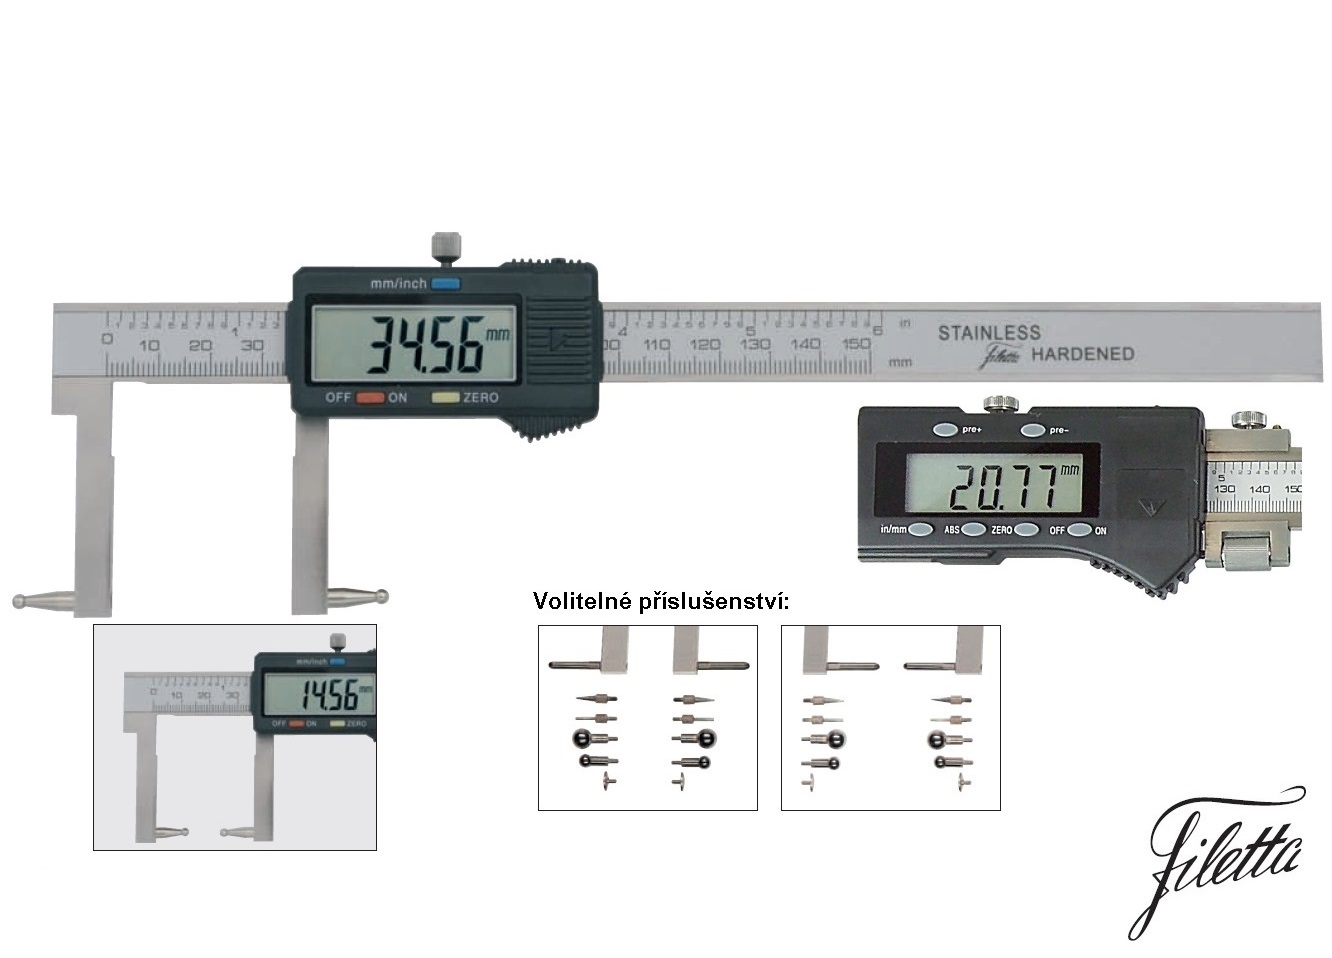 Digitální posuvné měřítko Filetta 0-500 mm pro výměnné měř. doteky se závitem M2,5